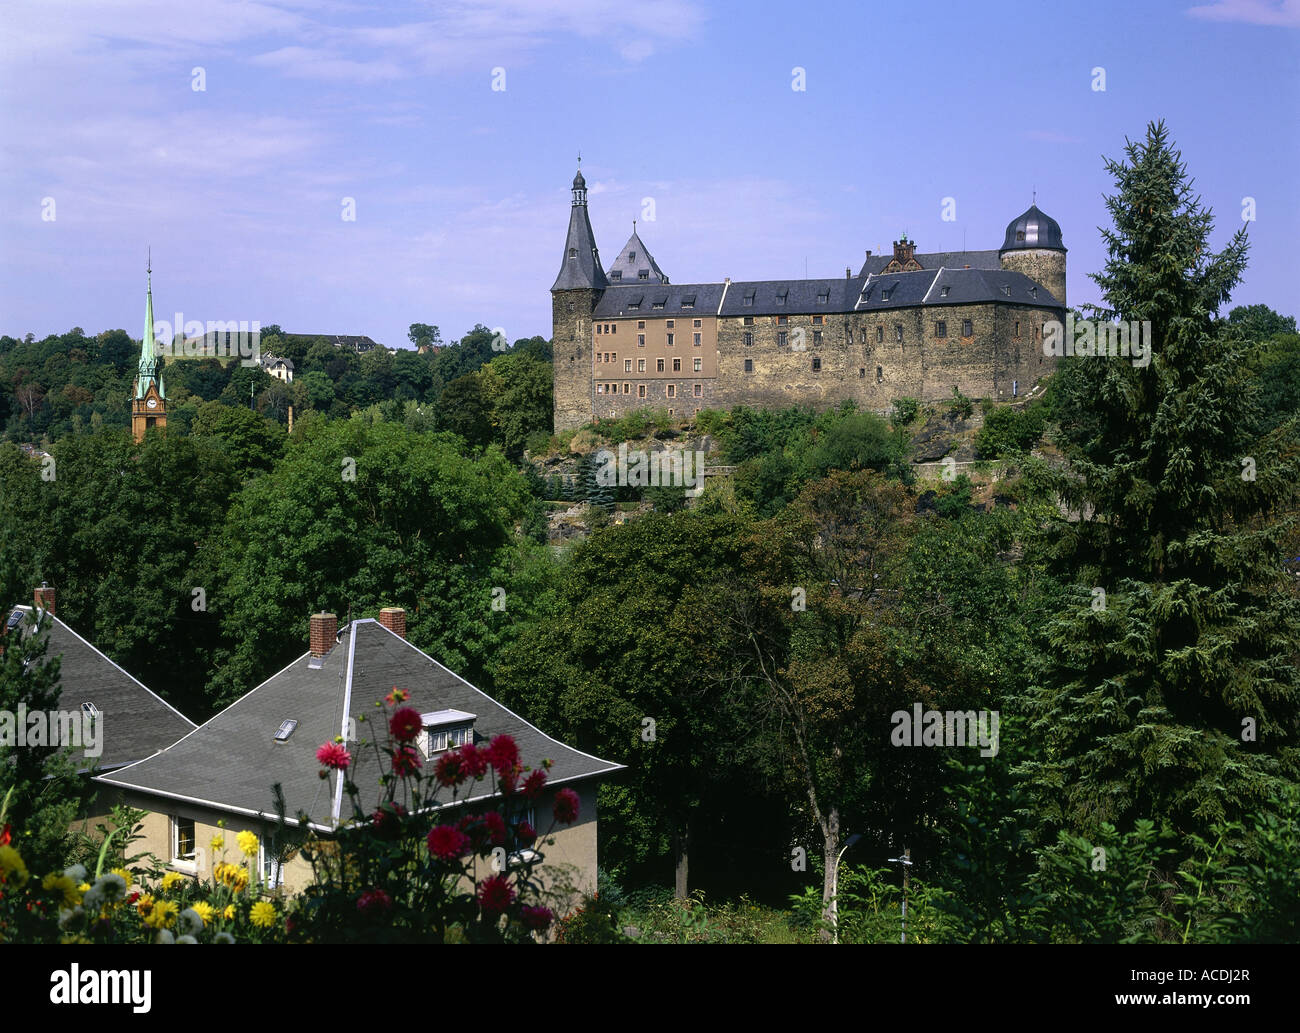 Geografia / viaggi, Germania, Saxonia, Mylau, castello Mylau, costruito: 1180, vista esterna, Europa, architettura, Vogtland, medioevale Foto Stock